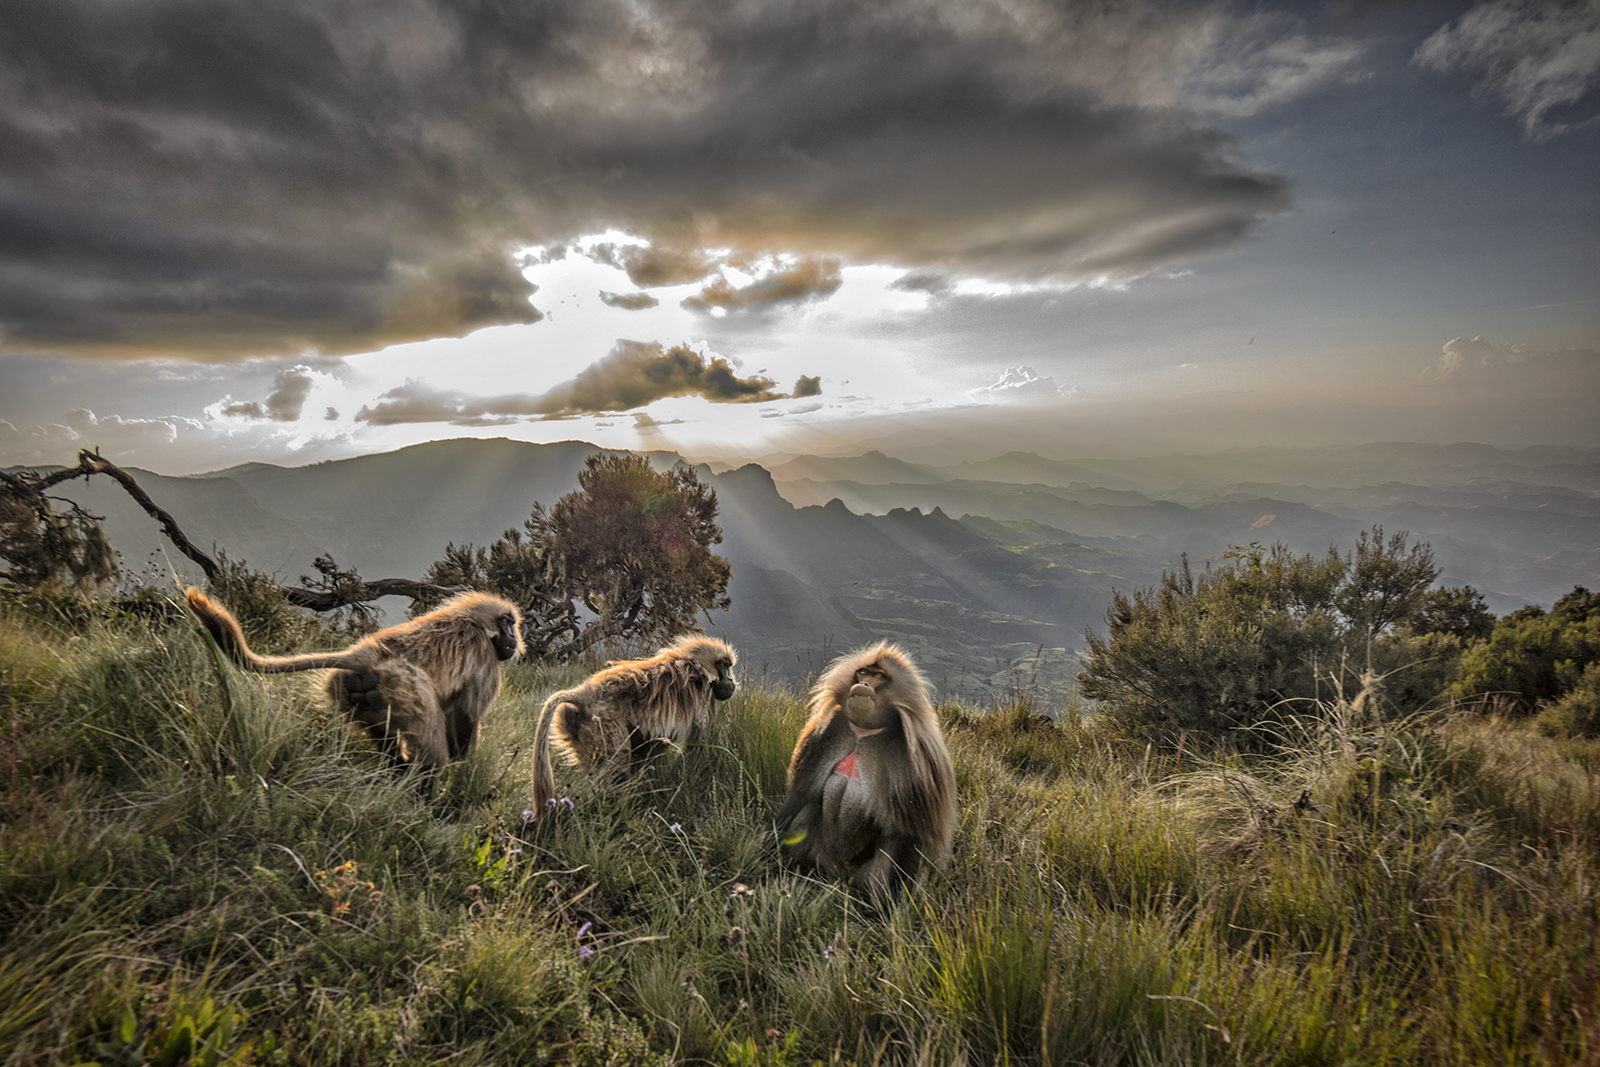 wildlife tourism in ethiopia